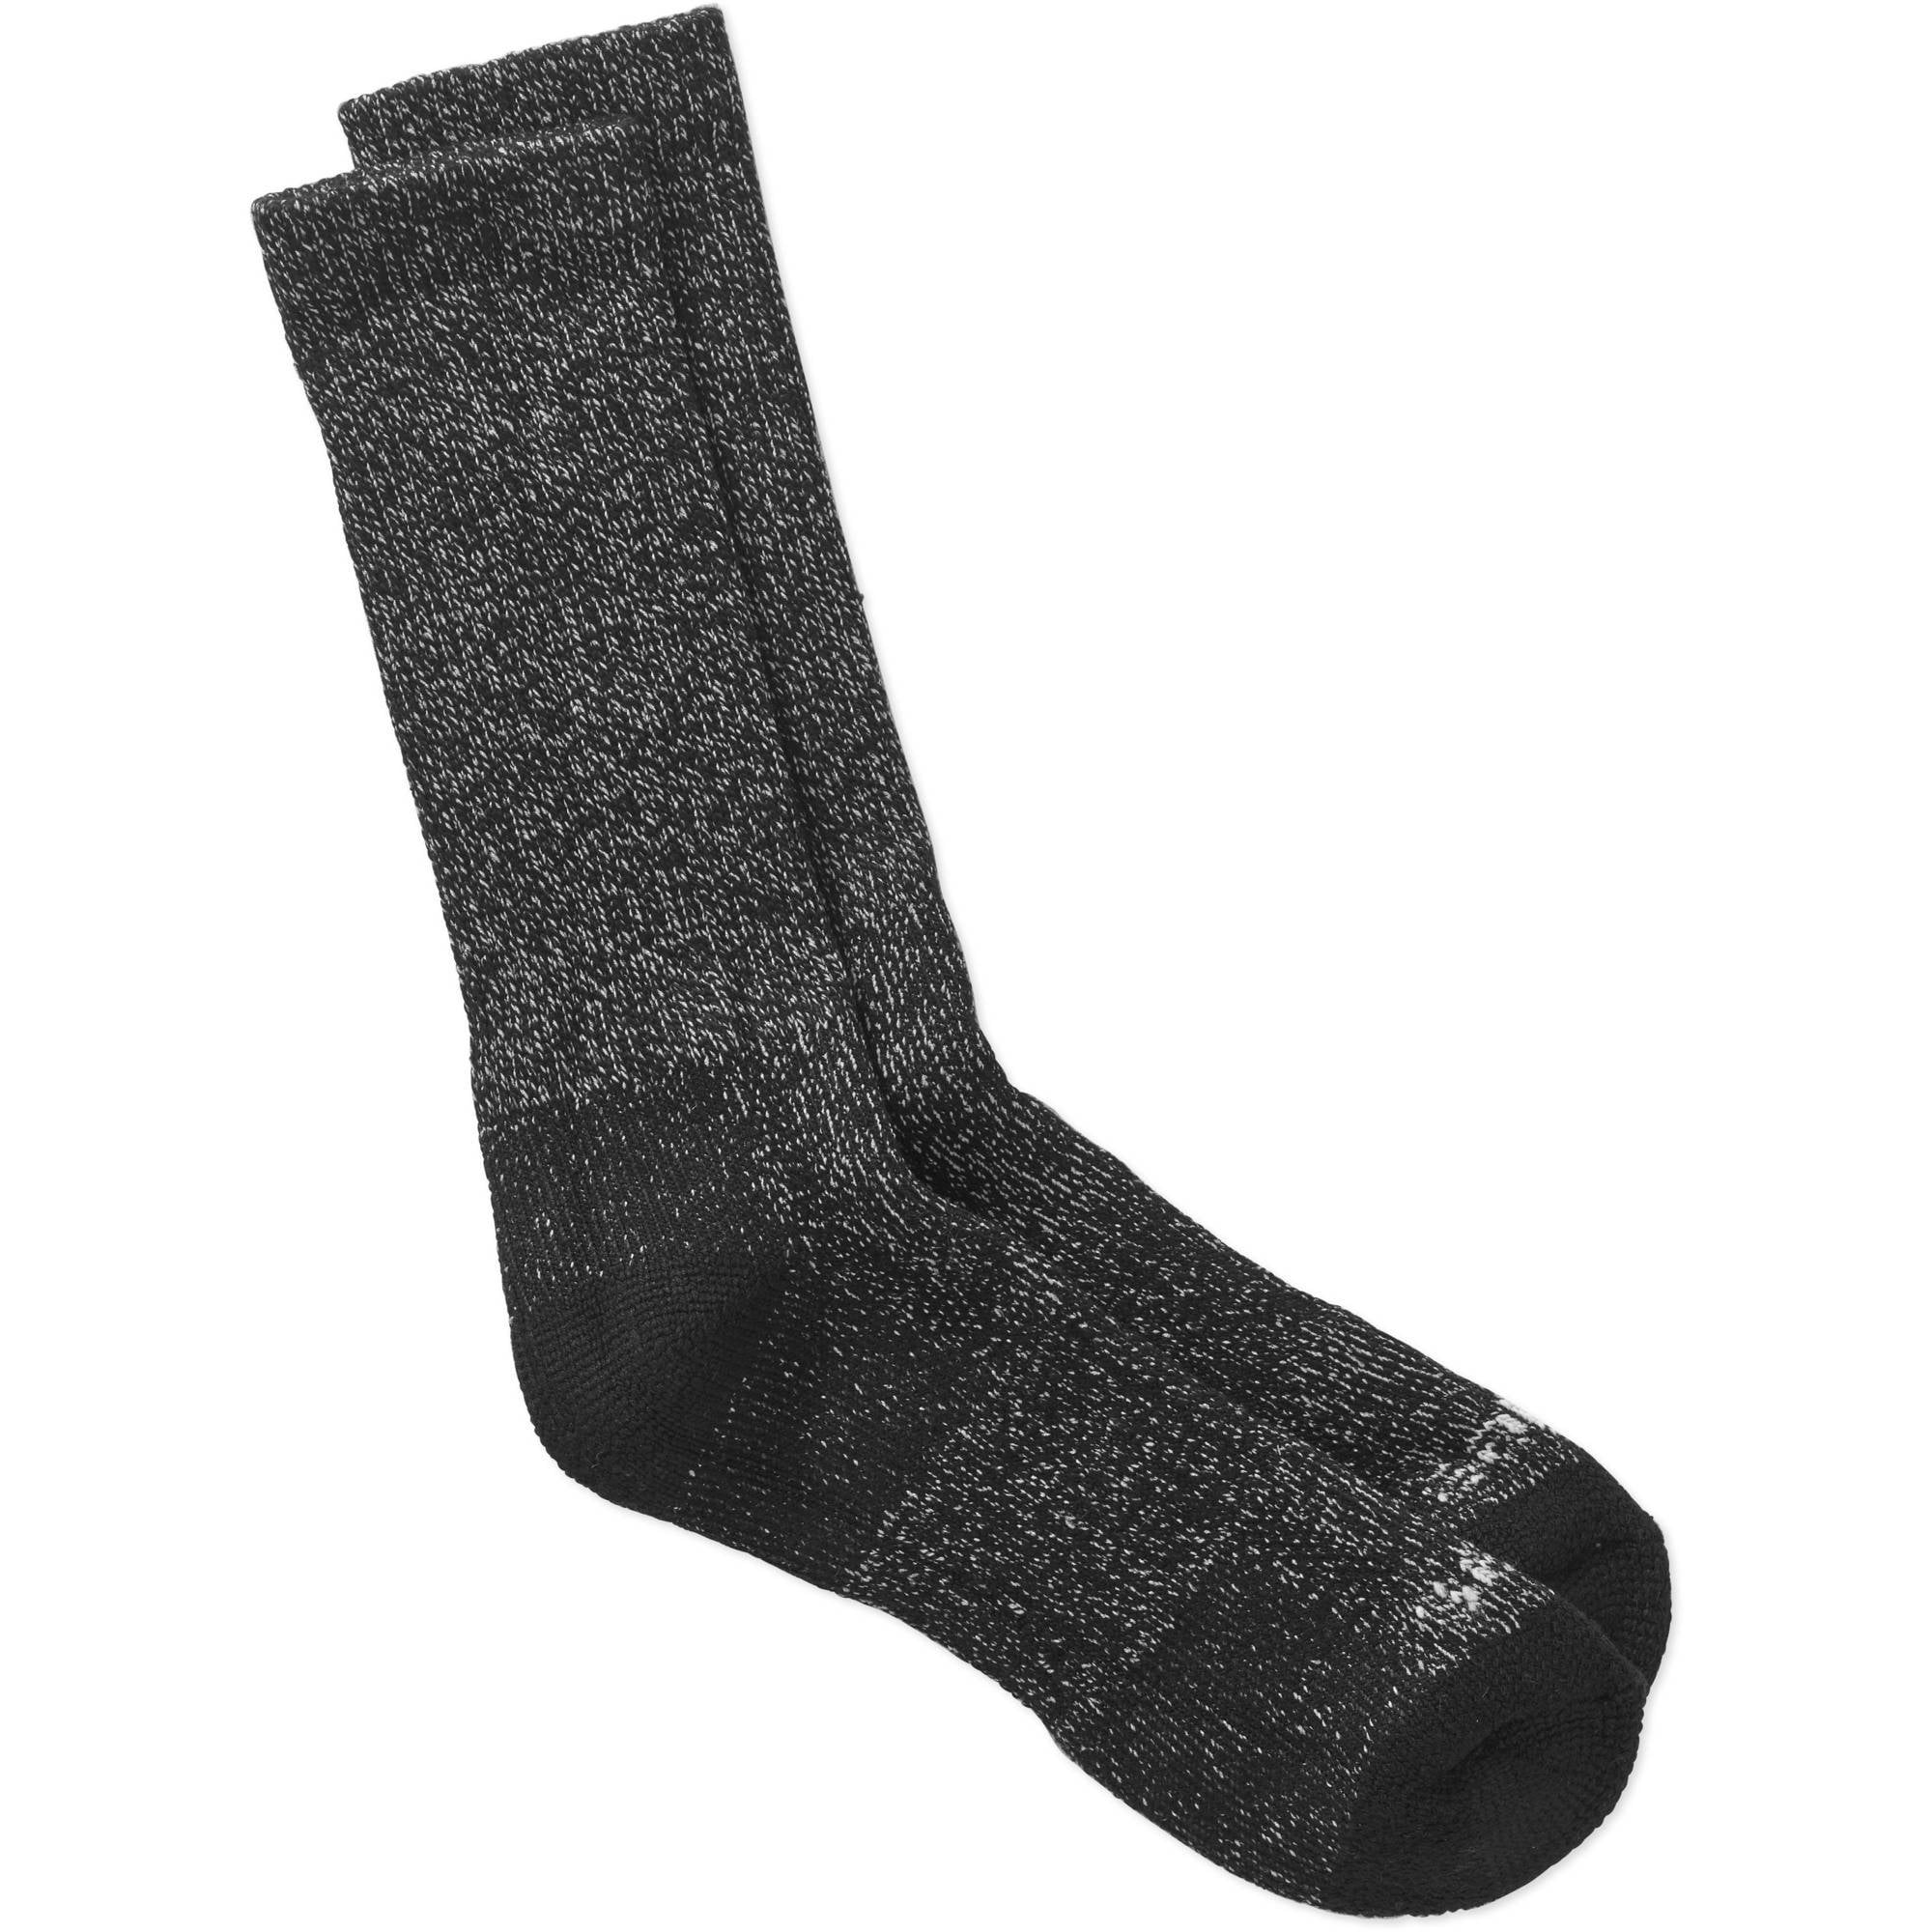 Men's Steel Toe Moisture Control Crew Sock, 2 Pack - Walmart.com